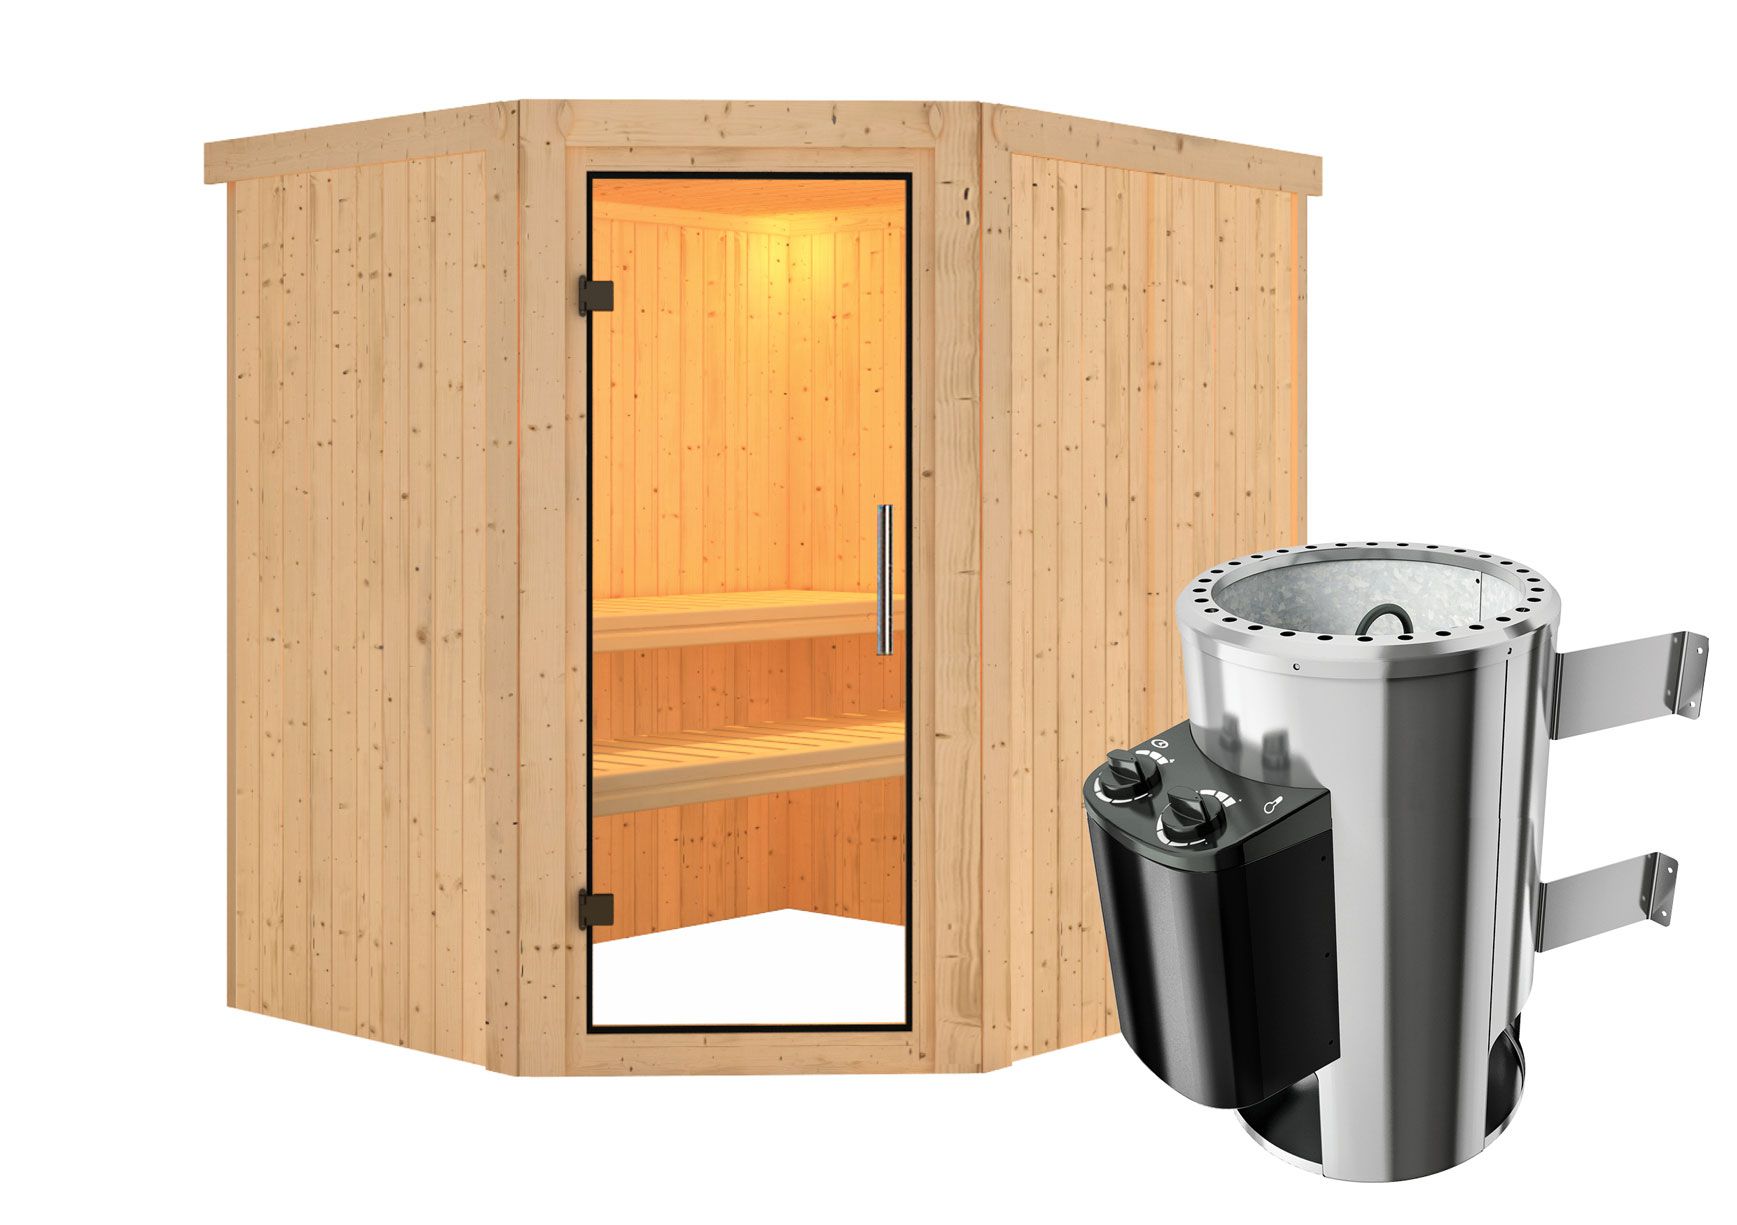 Sauna "Askjell" SET AKTION mit Klarglastür & Ofen 3,6 kW - 196 x 170 x 198 cm (B x T x H)